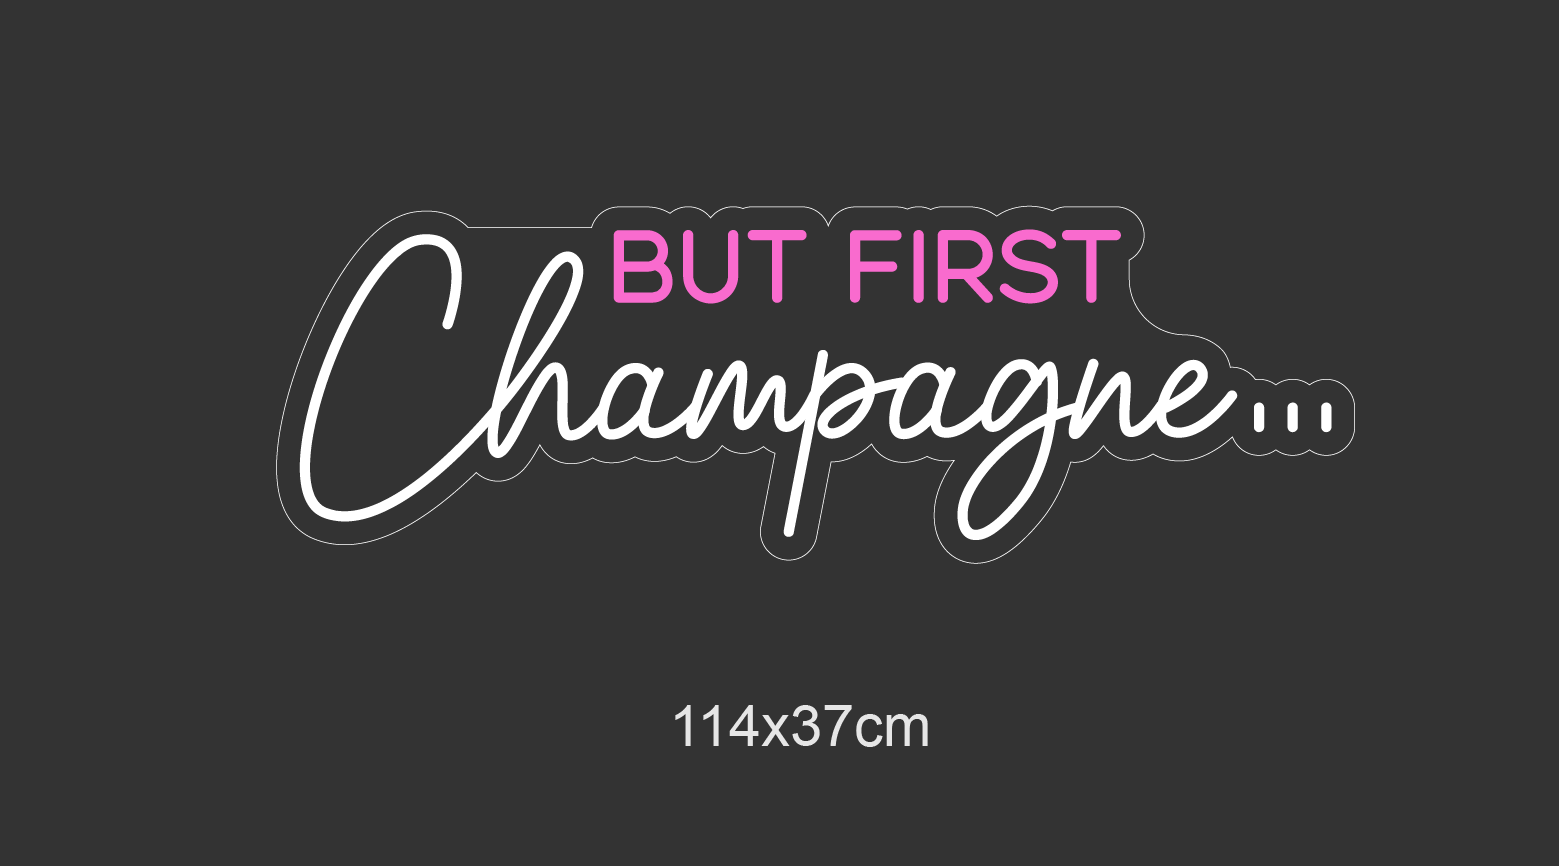 Skap en umiddelbar følelse av luksus og fest med vårt 'but first champagne' led-neonskilt. Dette skiltet er perfekt for å sette stemningen i enhver sammenkomst, og med sin blendende kombinasjon av hot pink og cool white vil det utvilsomt være midtpunktet i rommet.